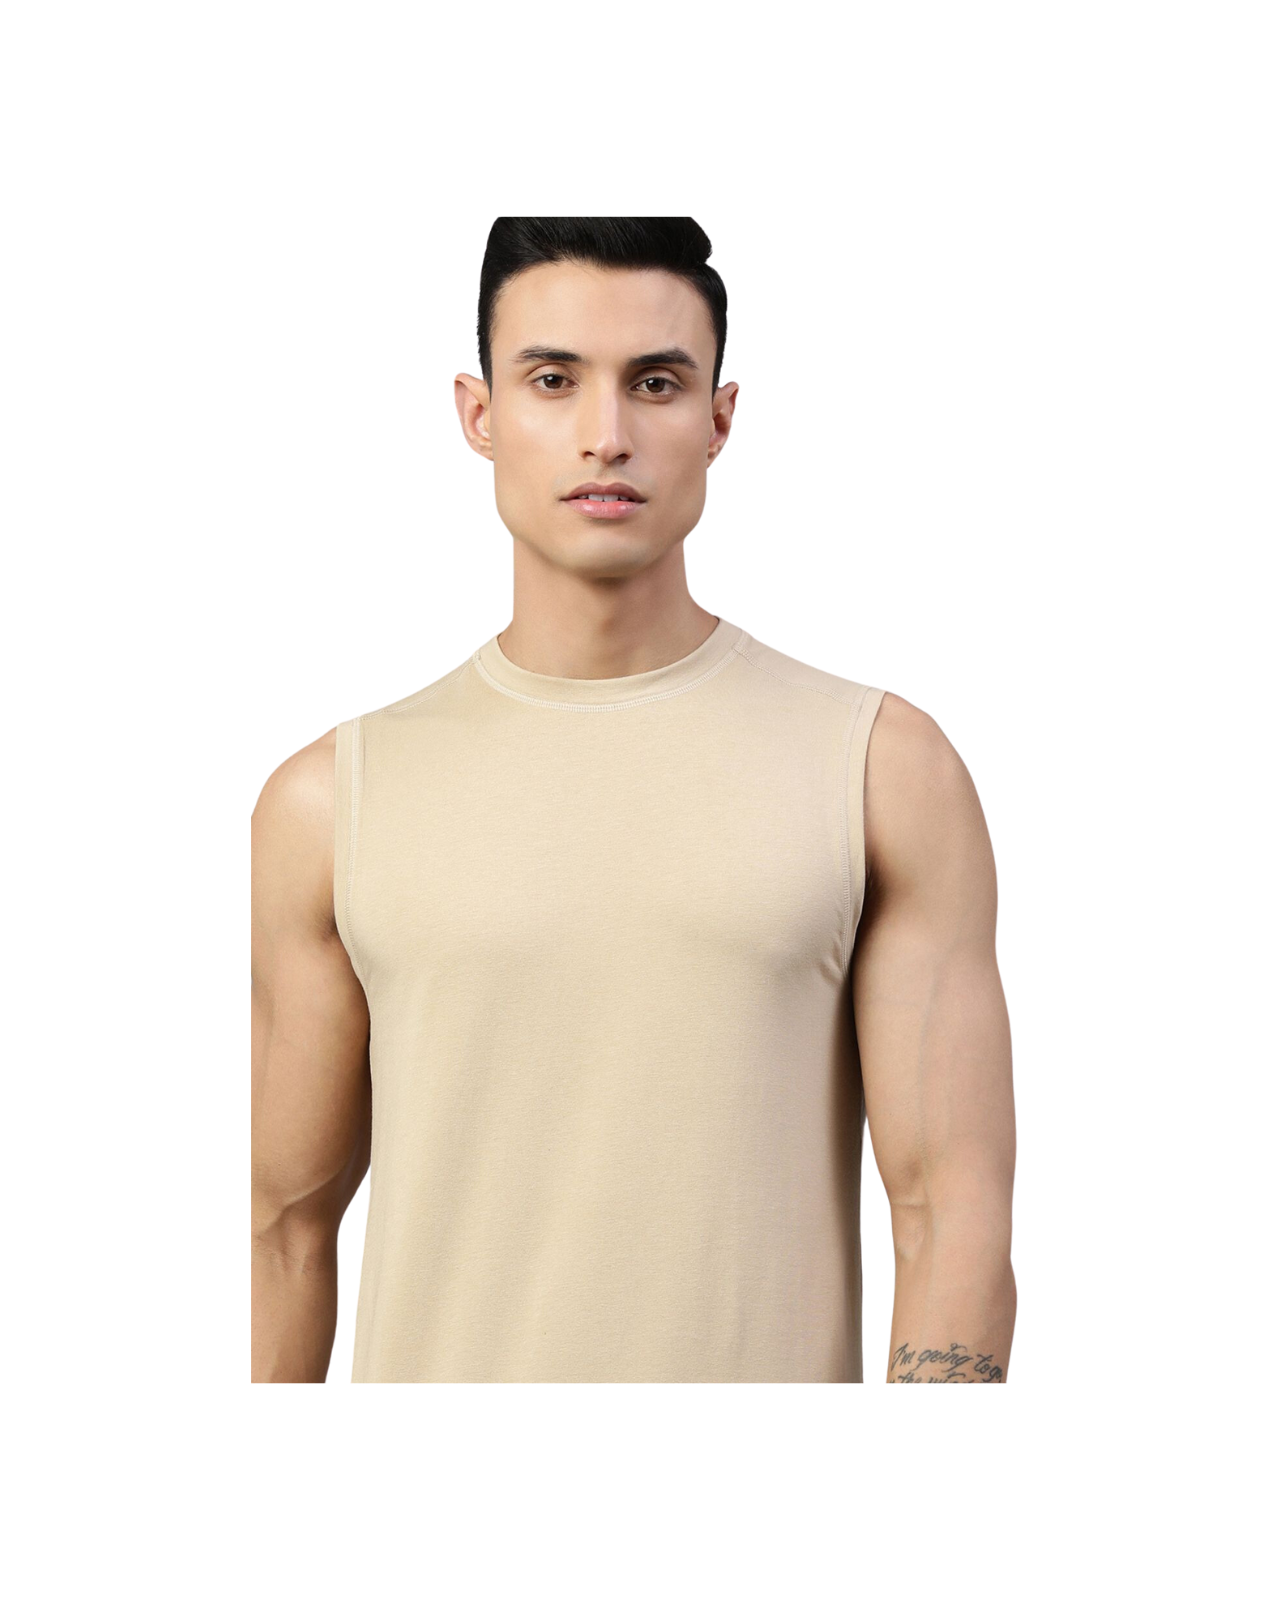 Men's Sleeveless Vest Thermal | Merino Wool + Bamboo